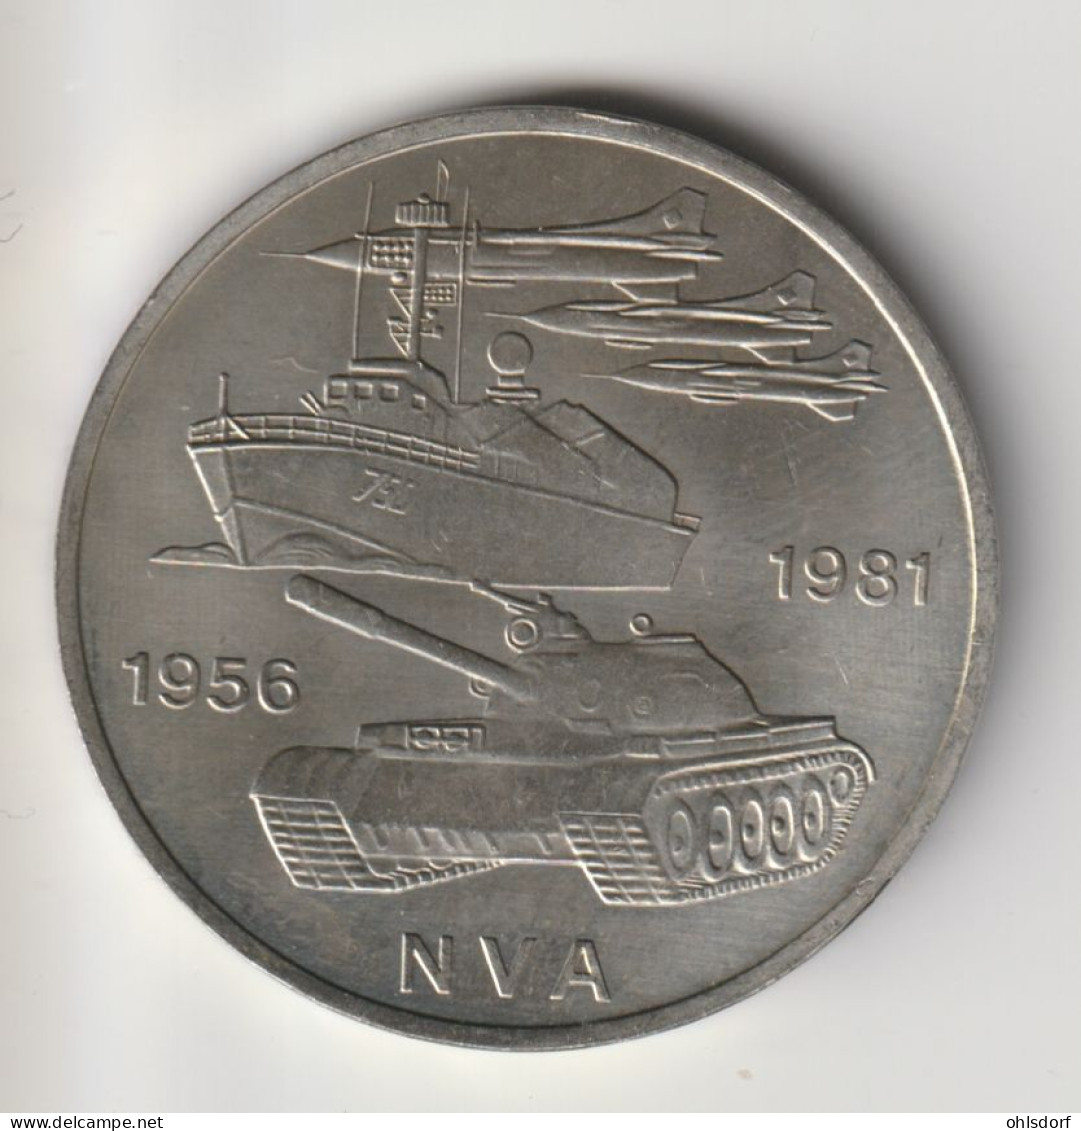 DDR 1981: 10 Mark, NVA, KM 80 - 10 Mark